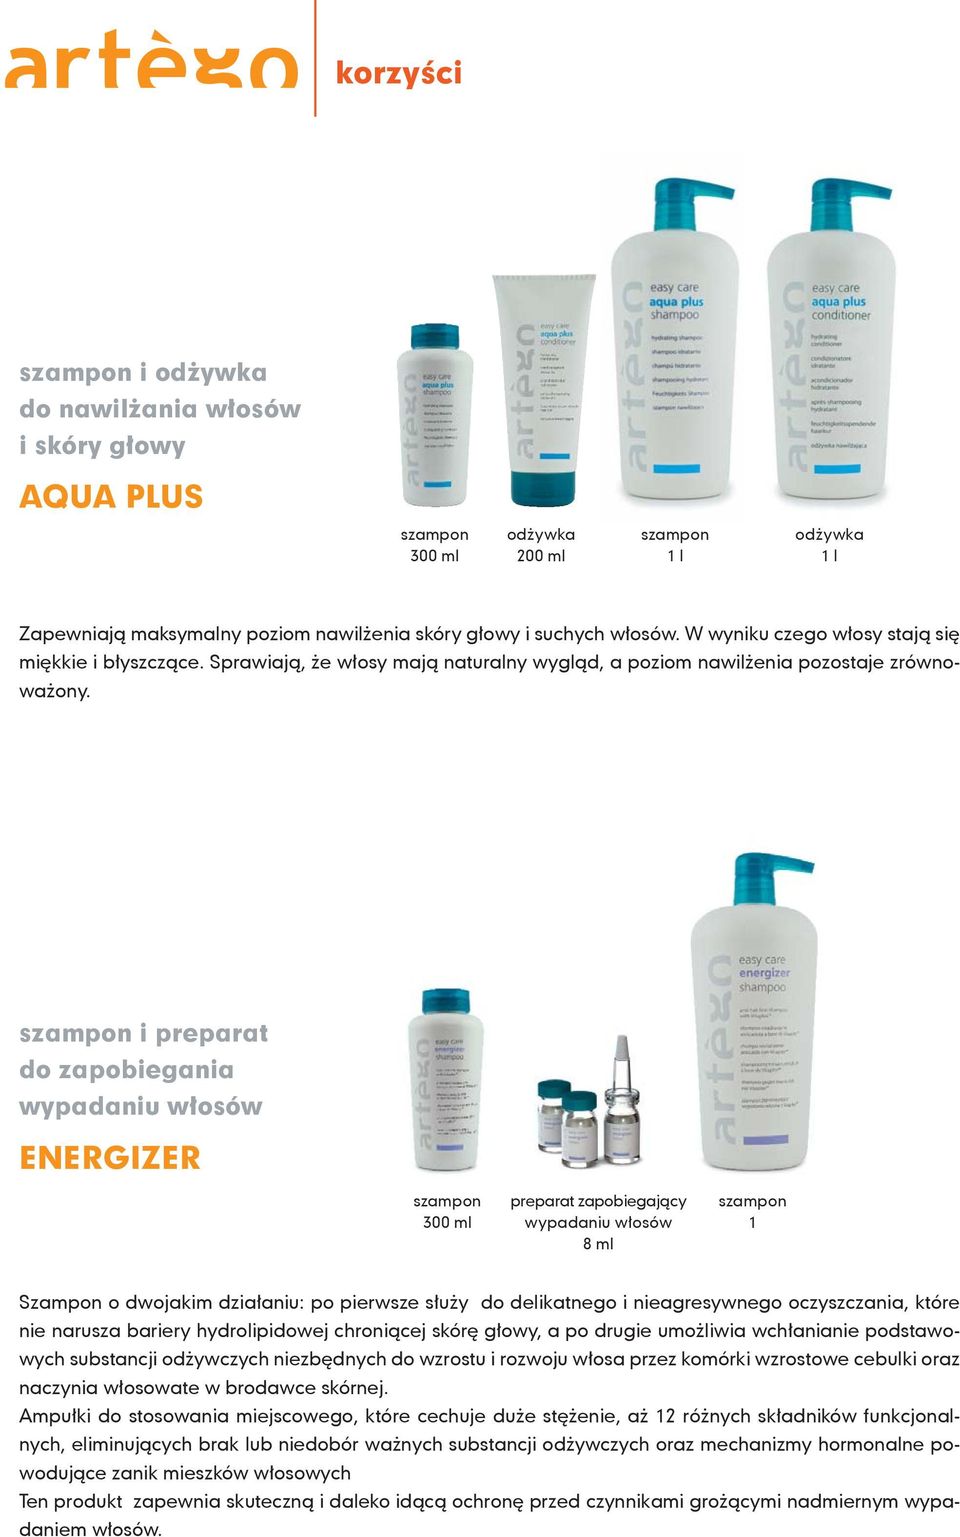 szampon i preparat do zapobiegania wypadaniu włosów ENERGIZER szampon preparat zapobiegający szampon 300 ml wypadaniu włosów 1 8 ml Szampon o dwojakim działaniu: po pierwsze służy do delikatnego i